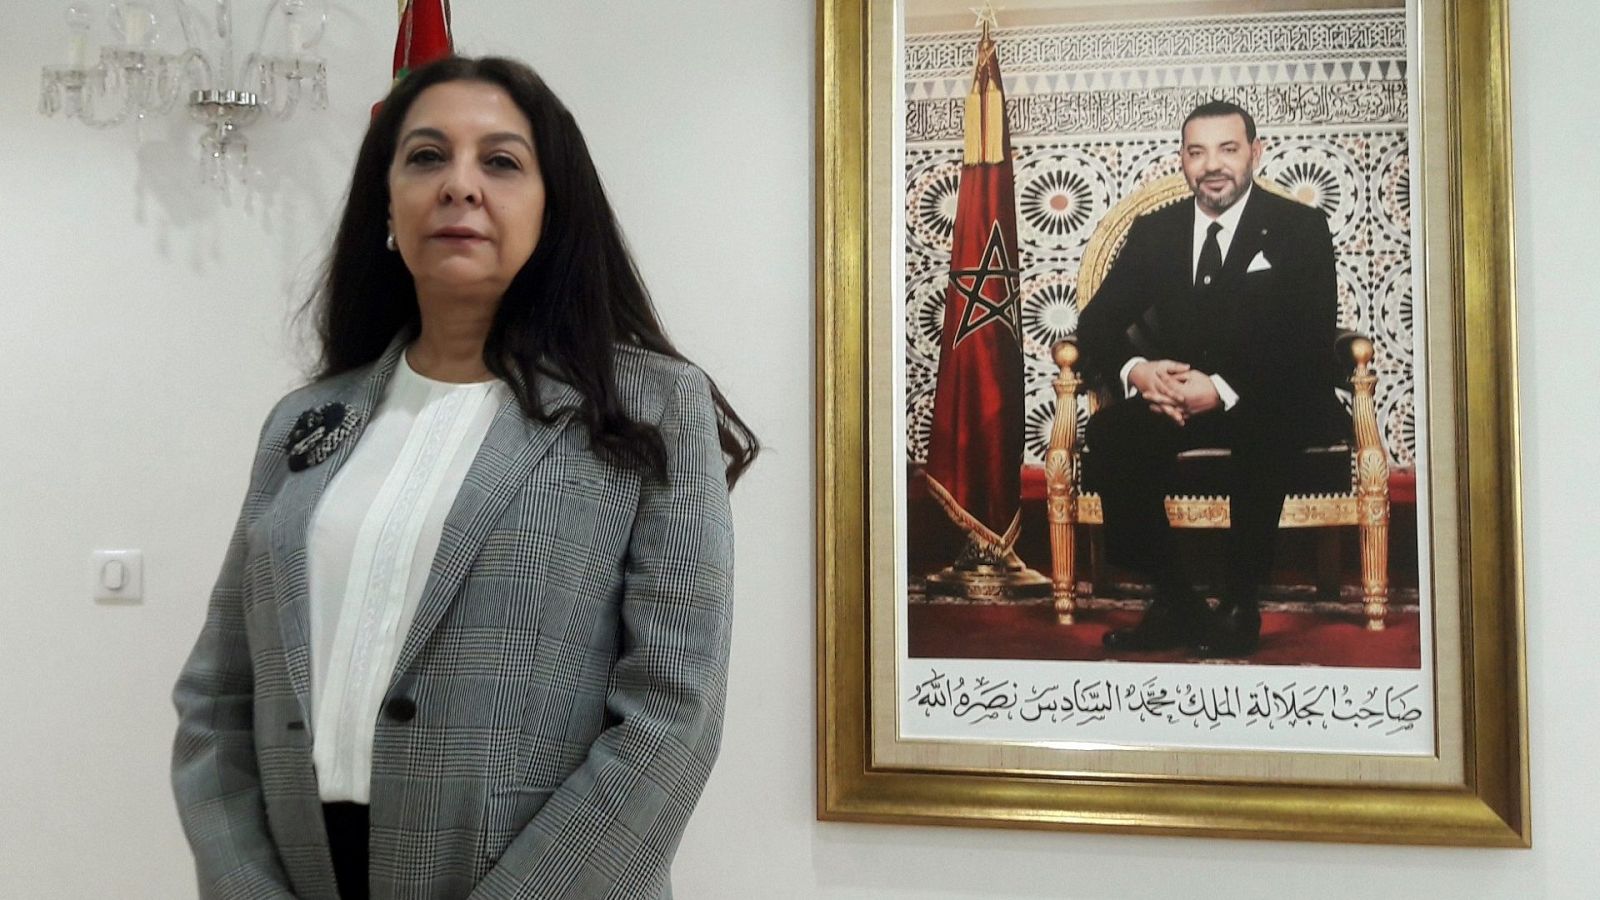 La embajadora de Marruecos: "España ha optado por la opacidad para actuar a espaldas de Marruecos, acogiendo a un criminal"